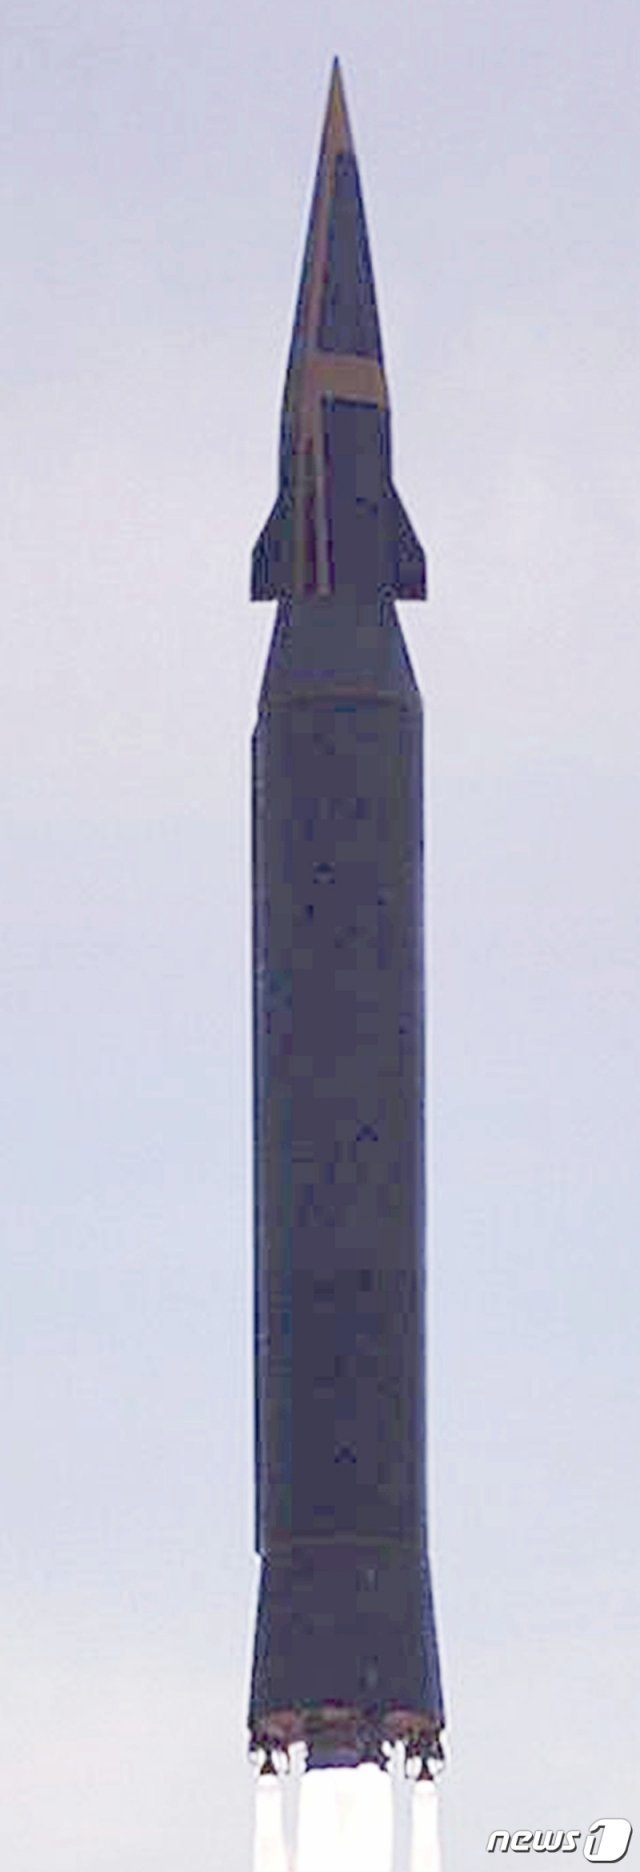 북한이 지난 28일 시험 발사한 극초음속 미사일(극초음속 활공체(HGV) 탑재 미사일) ‘화성-8형’. 미사일 추진체는 1단이며, 탄두부의 활공체엔 3~4개의 날개가 붙어 있는 것으로 추정된다. (네이선 헌트 트위터) © 뉴스1